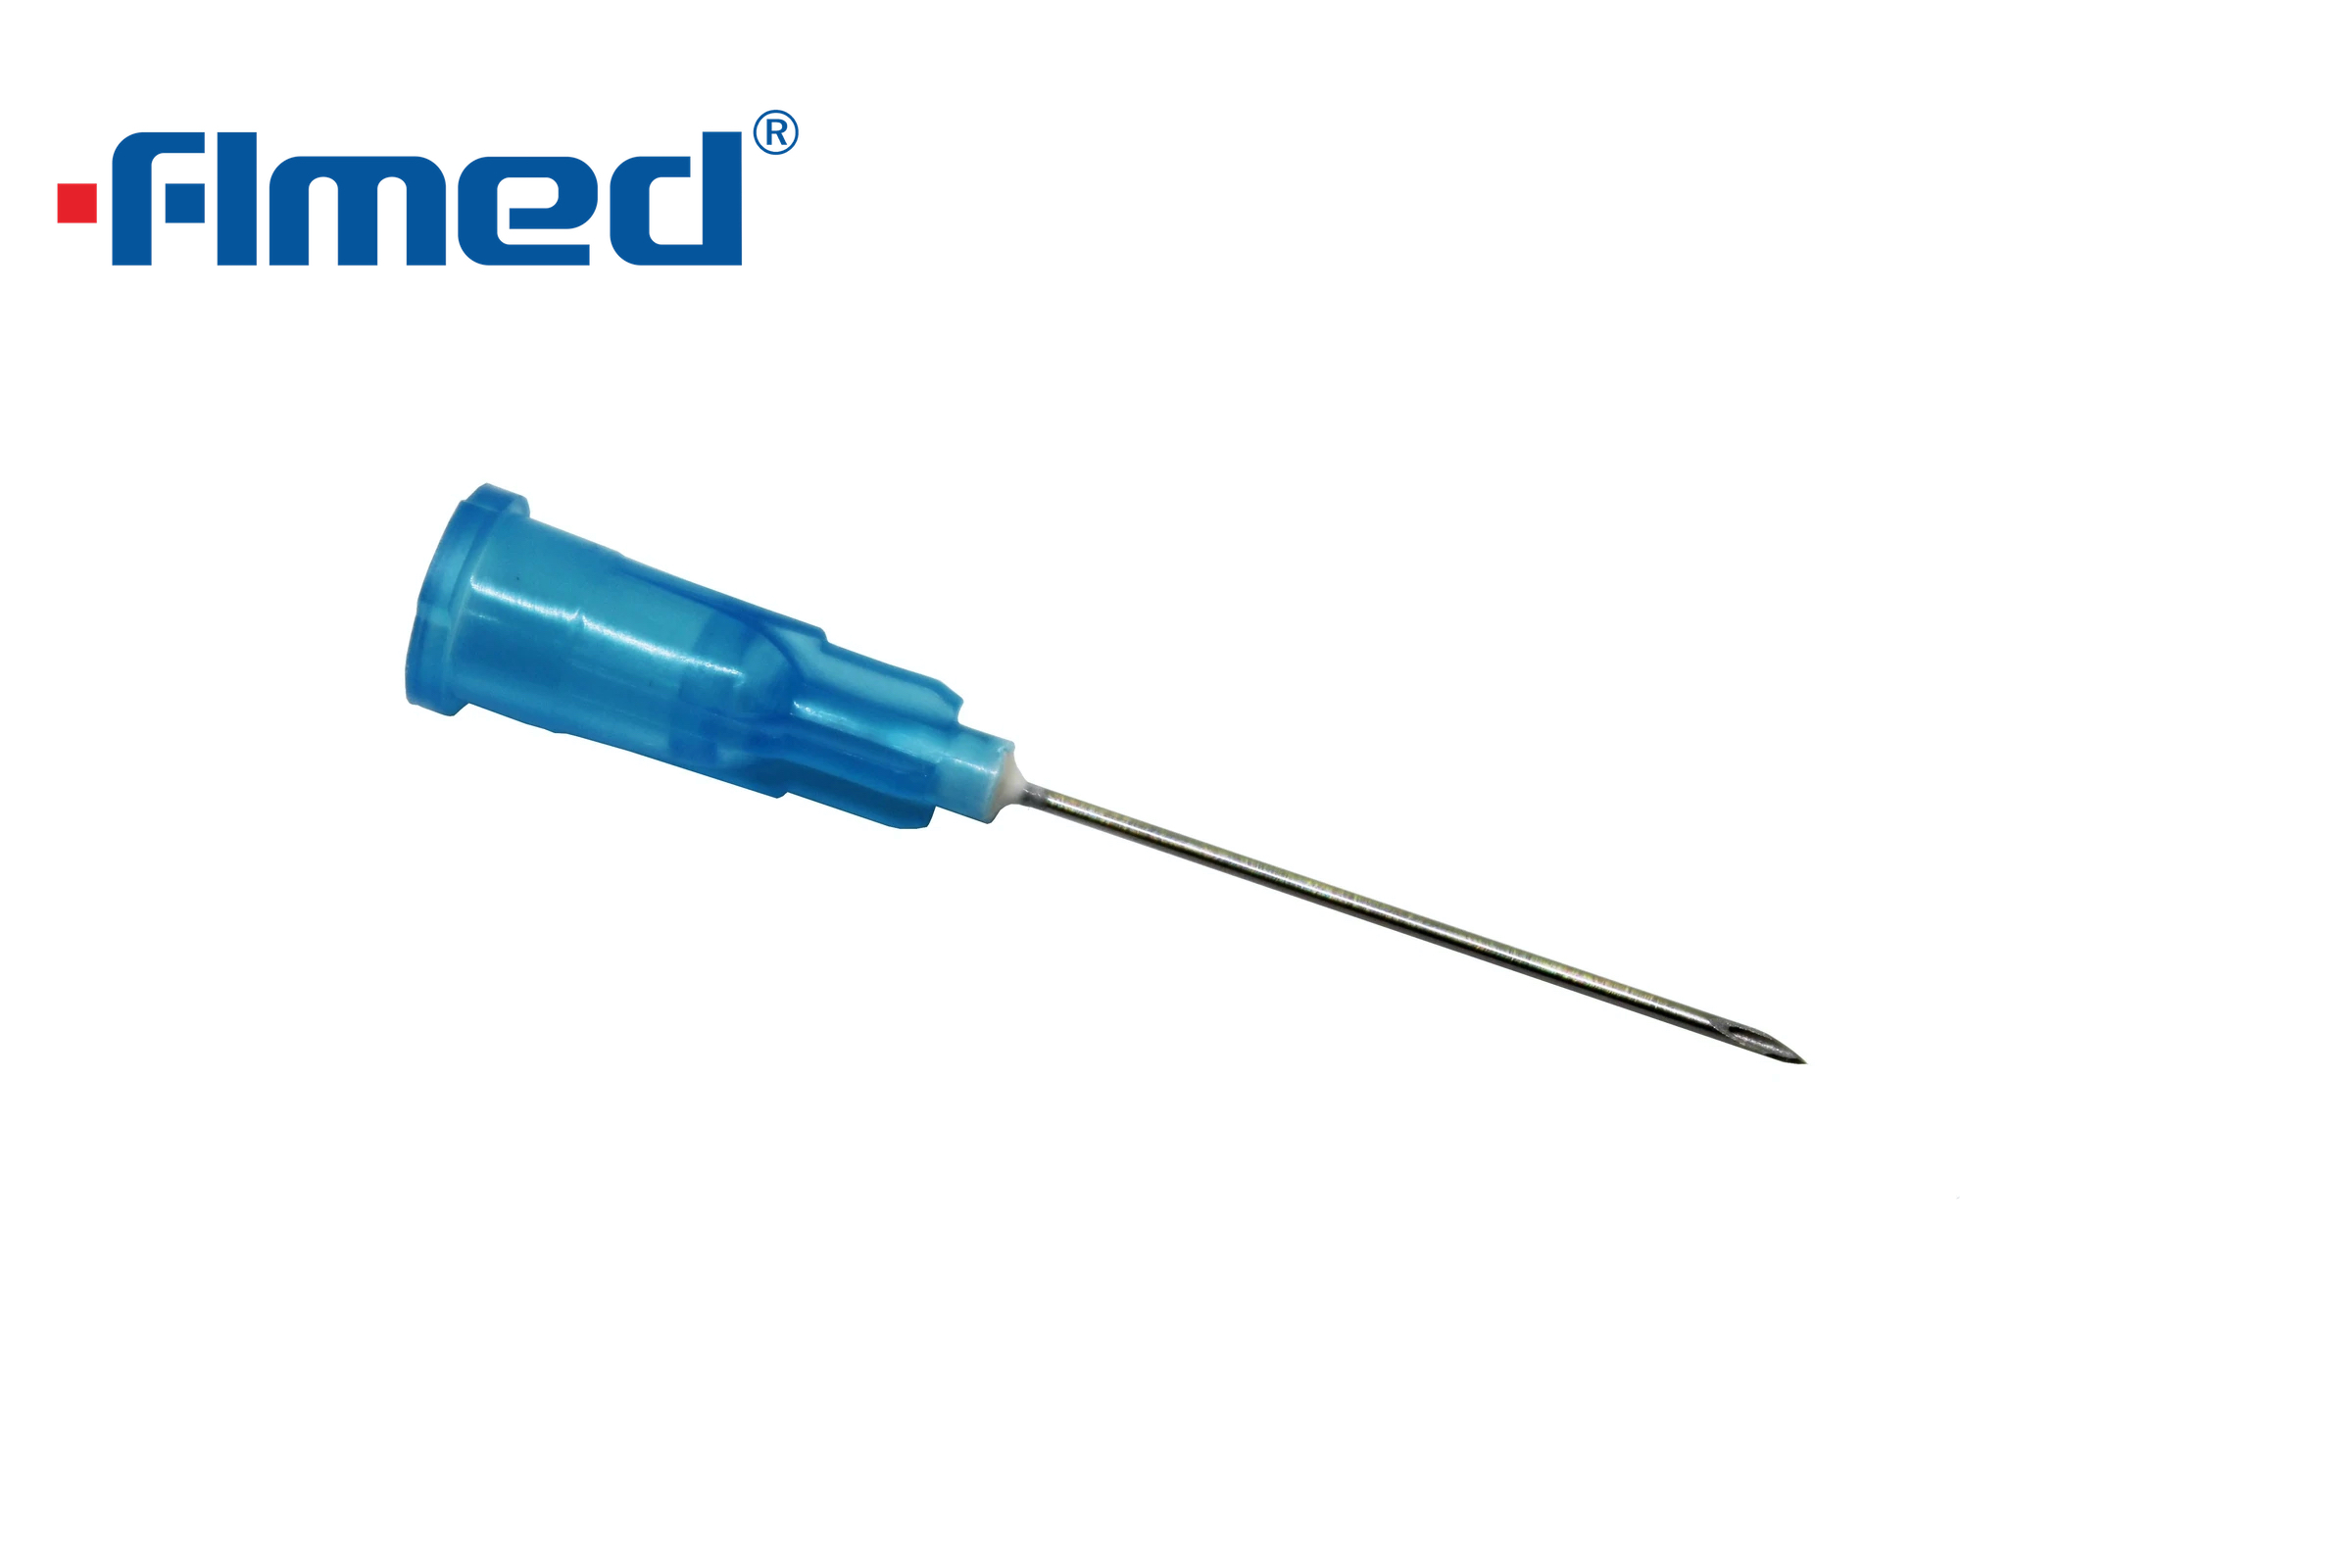 23 g de aguja hipodérmica (0.6 mm x 25 mm) azul (23g x 1.0 "pulgada)